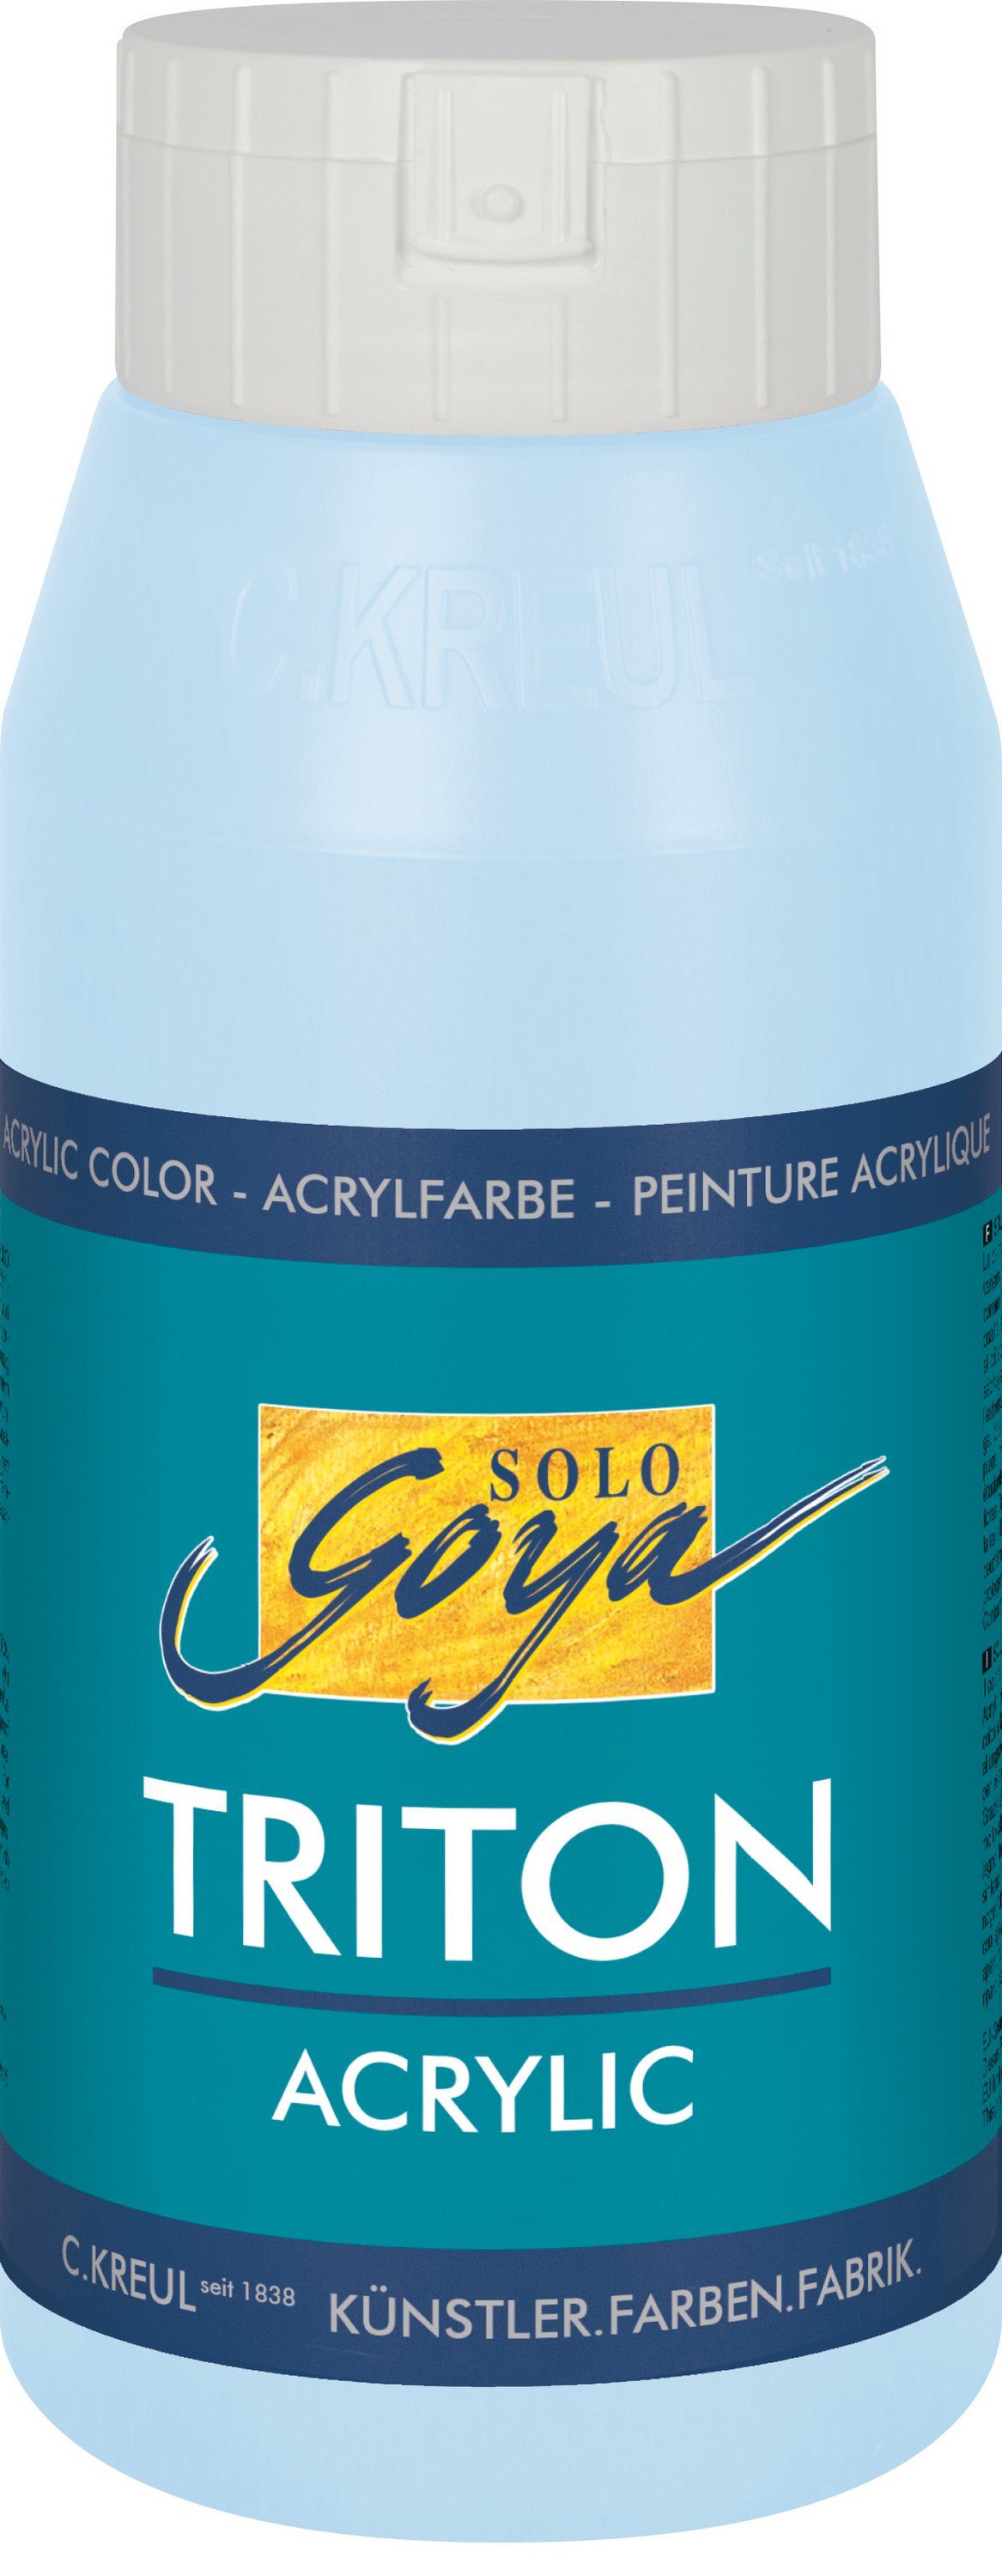 Kreul Acrylfarbe Solo Goya Triton hell 750 Himmelblau ml Acrylic